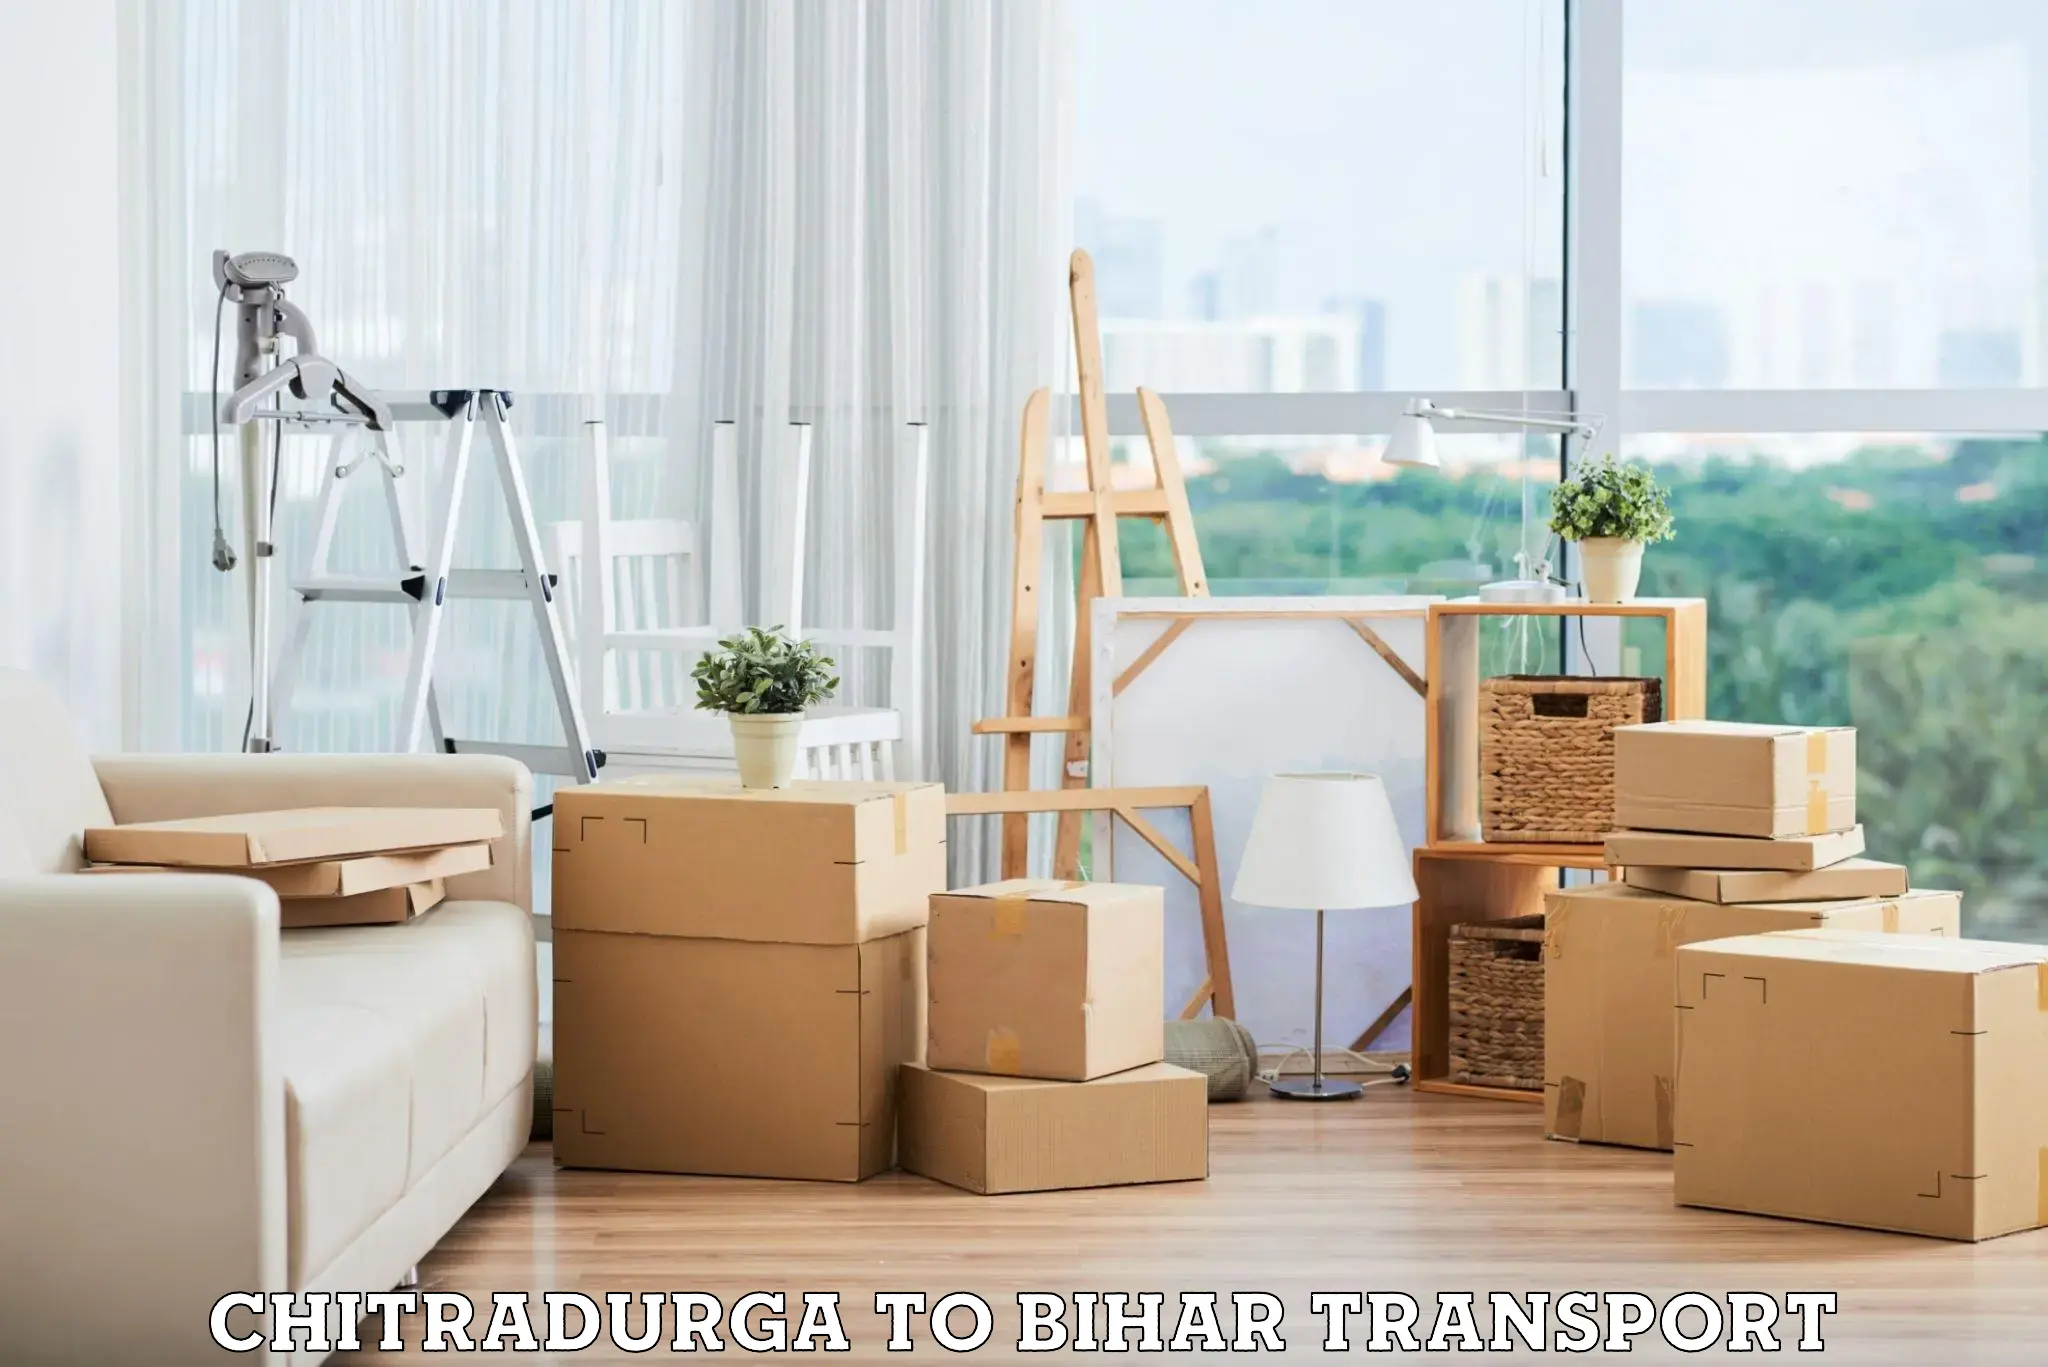 Furniture transport service Chitradurga to Tekari